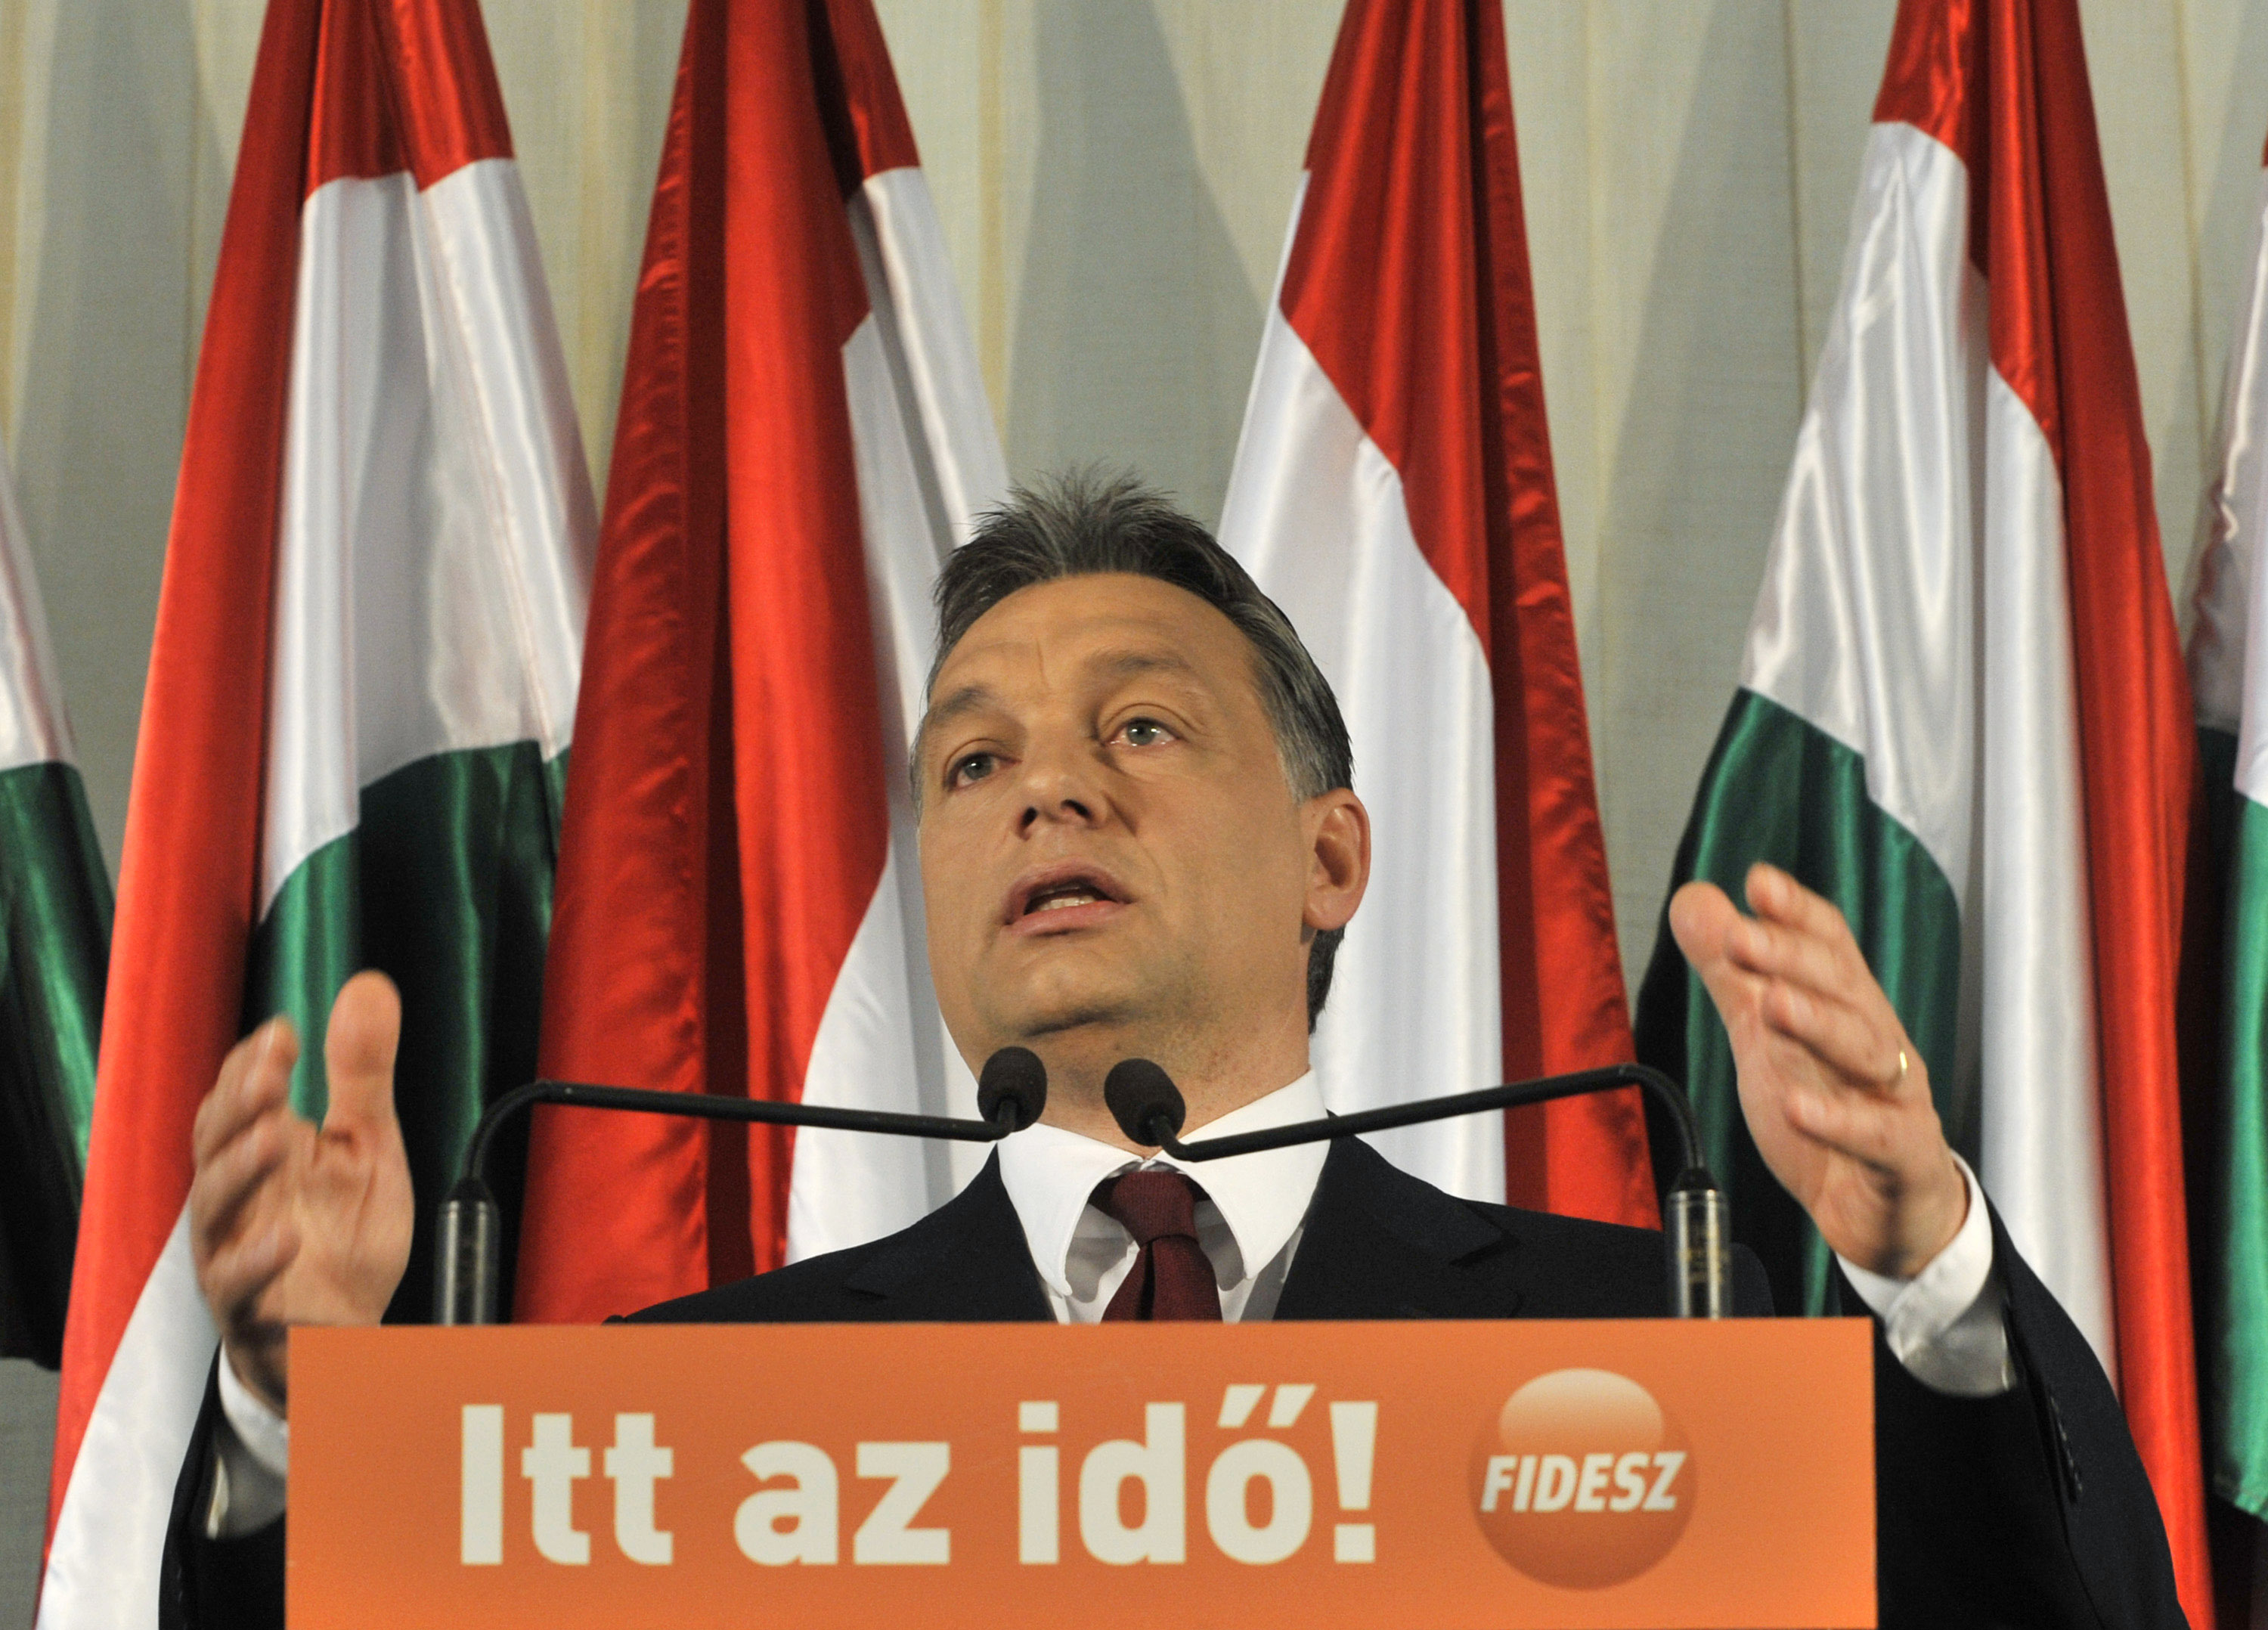 Neues Mediengesetz in Ungarn beschneidet Pressefreiheit